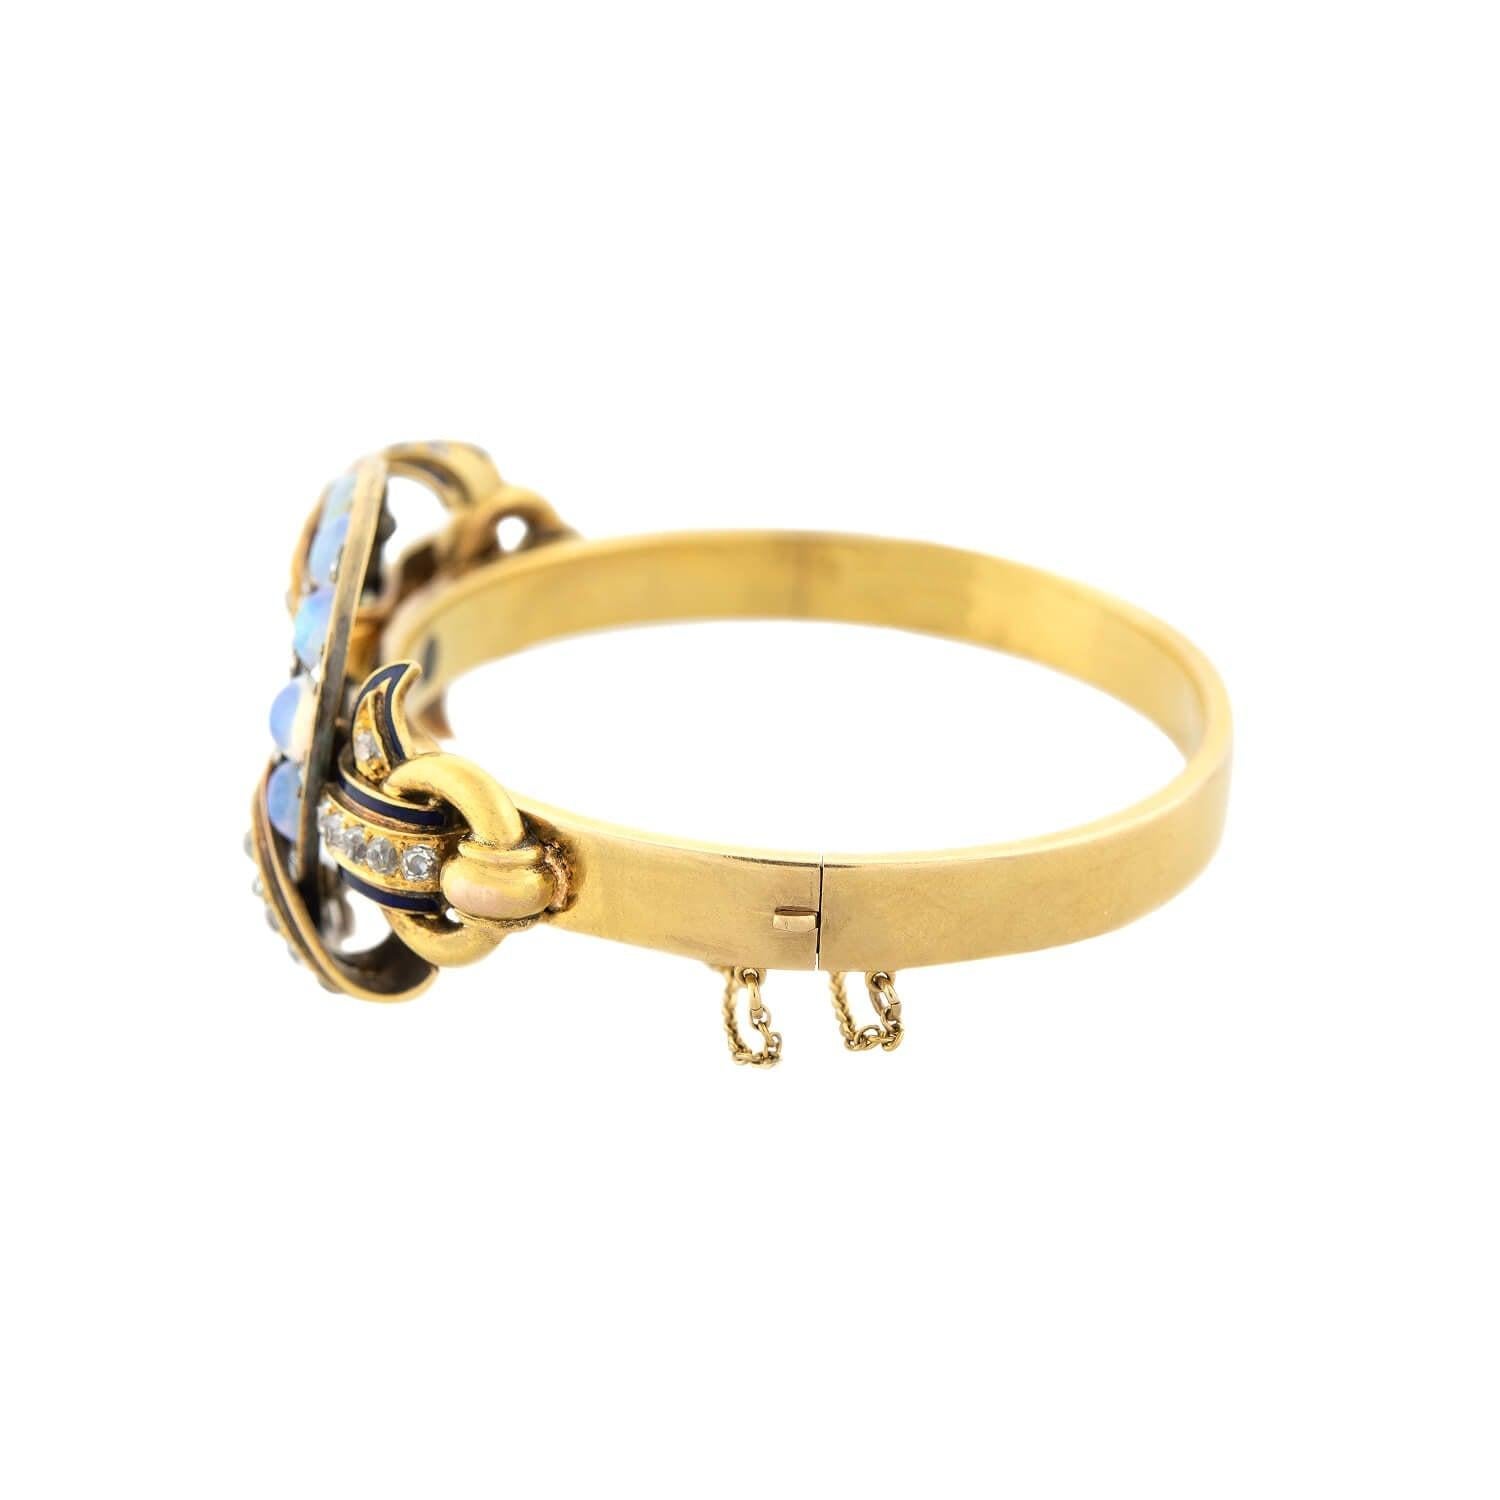 Un magnifique bracelet de l'époque victorienne (ca1880) ! Réalisé en or jaune 18kt, ce bracelet présente un magnifique motif de fer à cheval en opale et diamant. Le fer à cheval est riveté au bracelet et contient onze incroyables cabochons d'opale